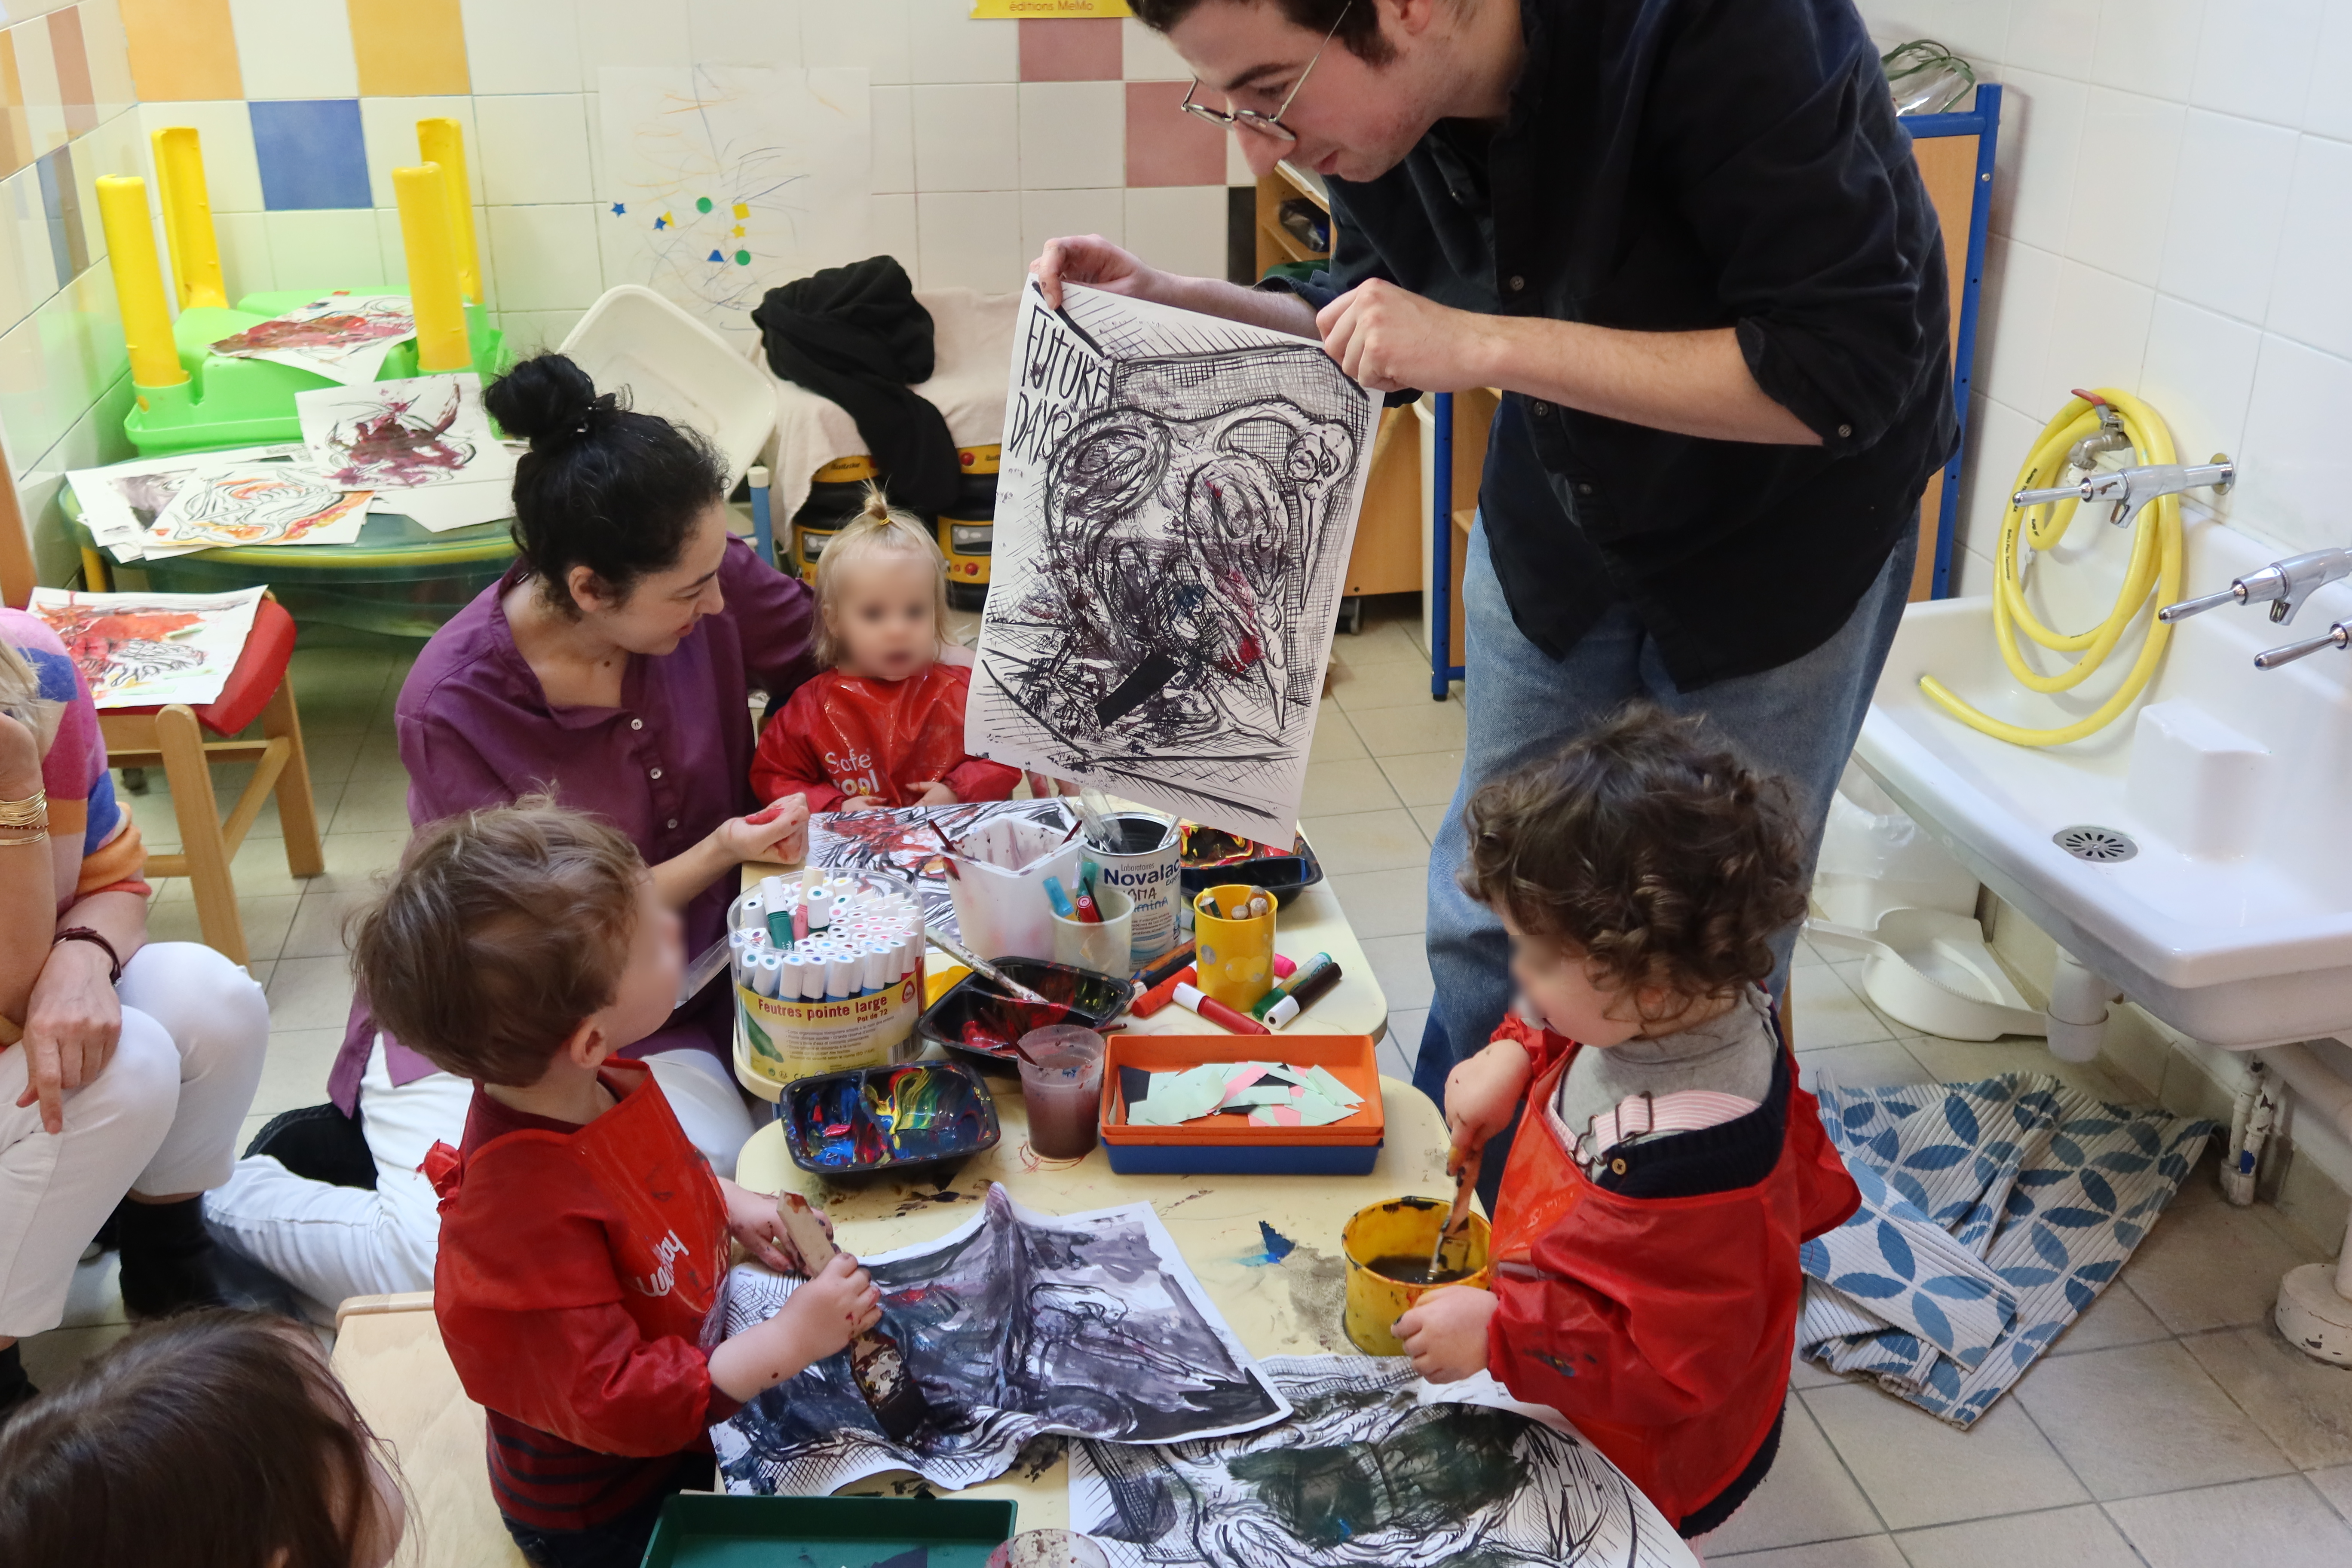 L'artiste Corentin Canesson a apporté des dessins pour un atelier peinture avec les enfants de la crèche Dunkerque (09e)